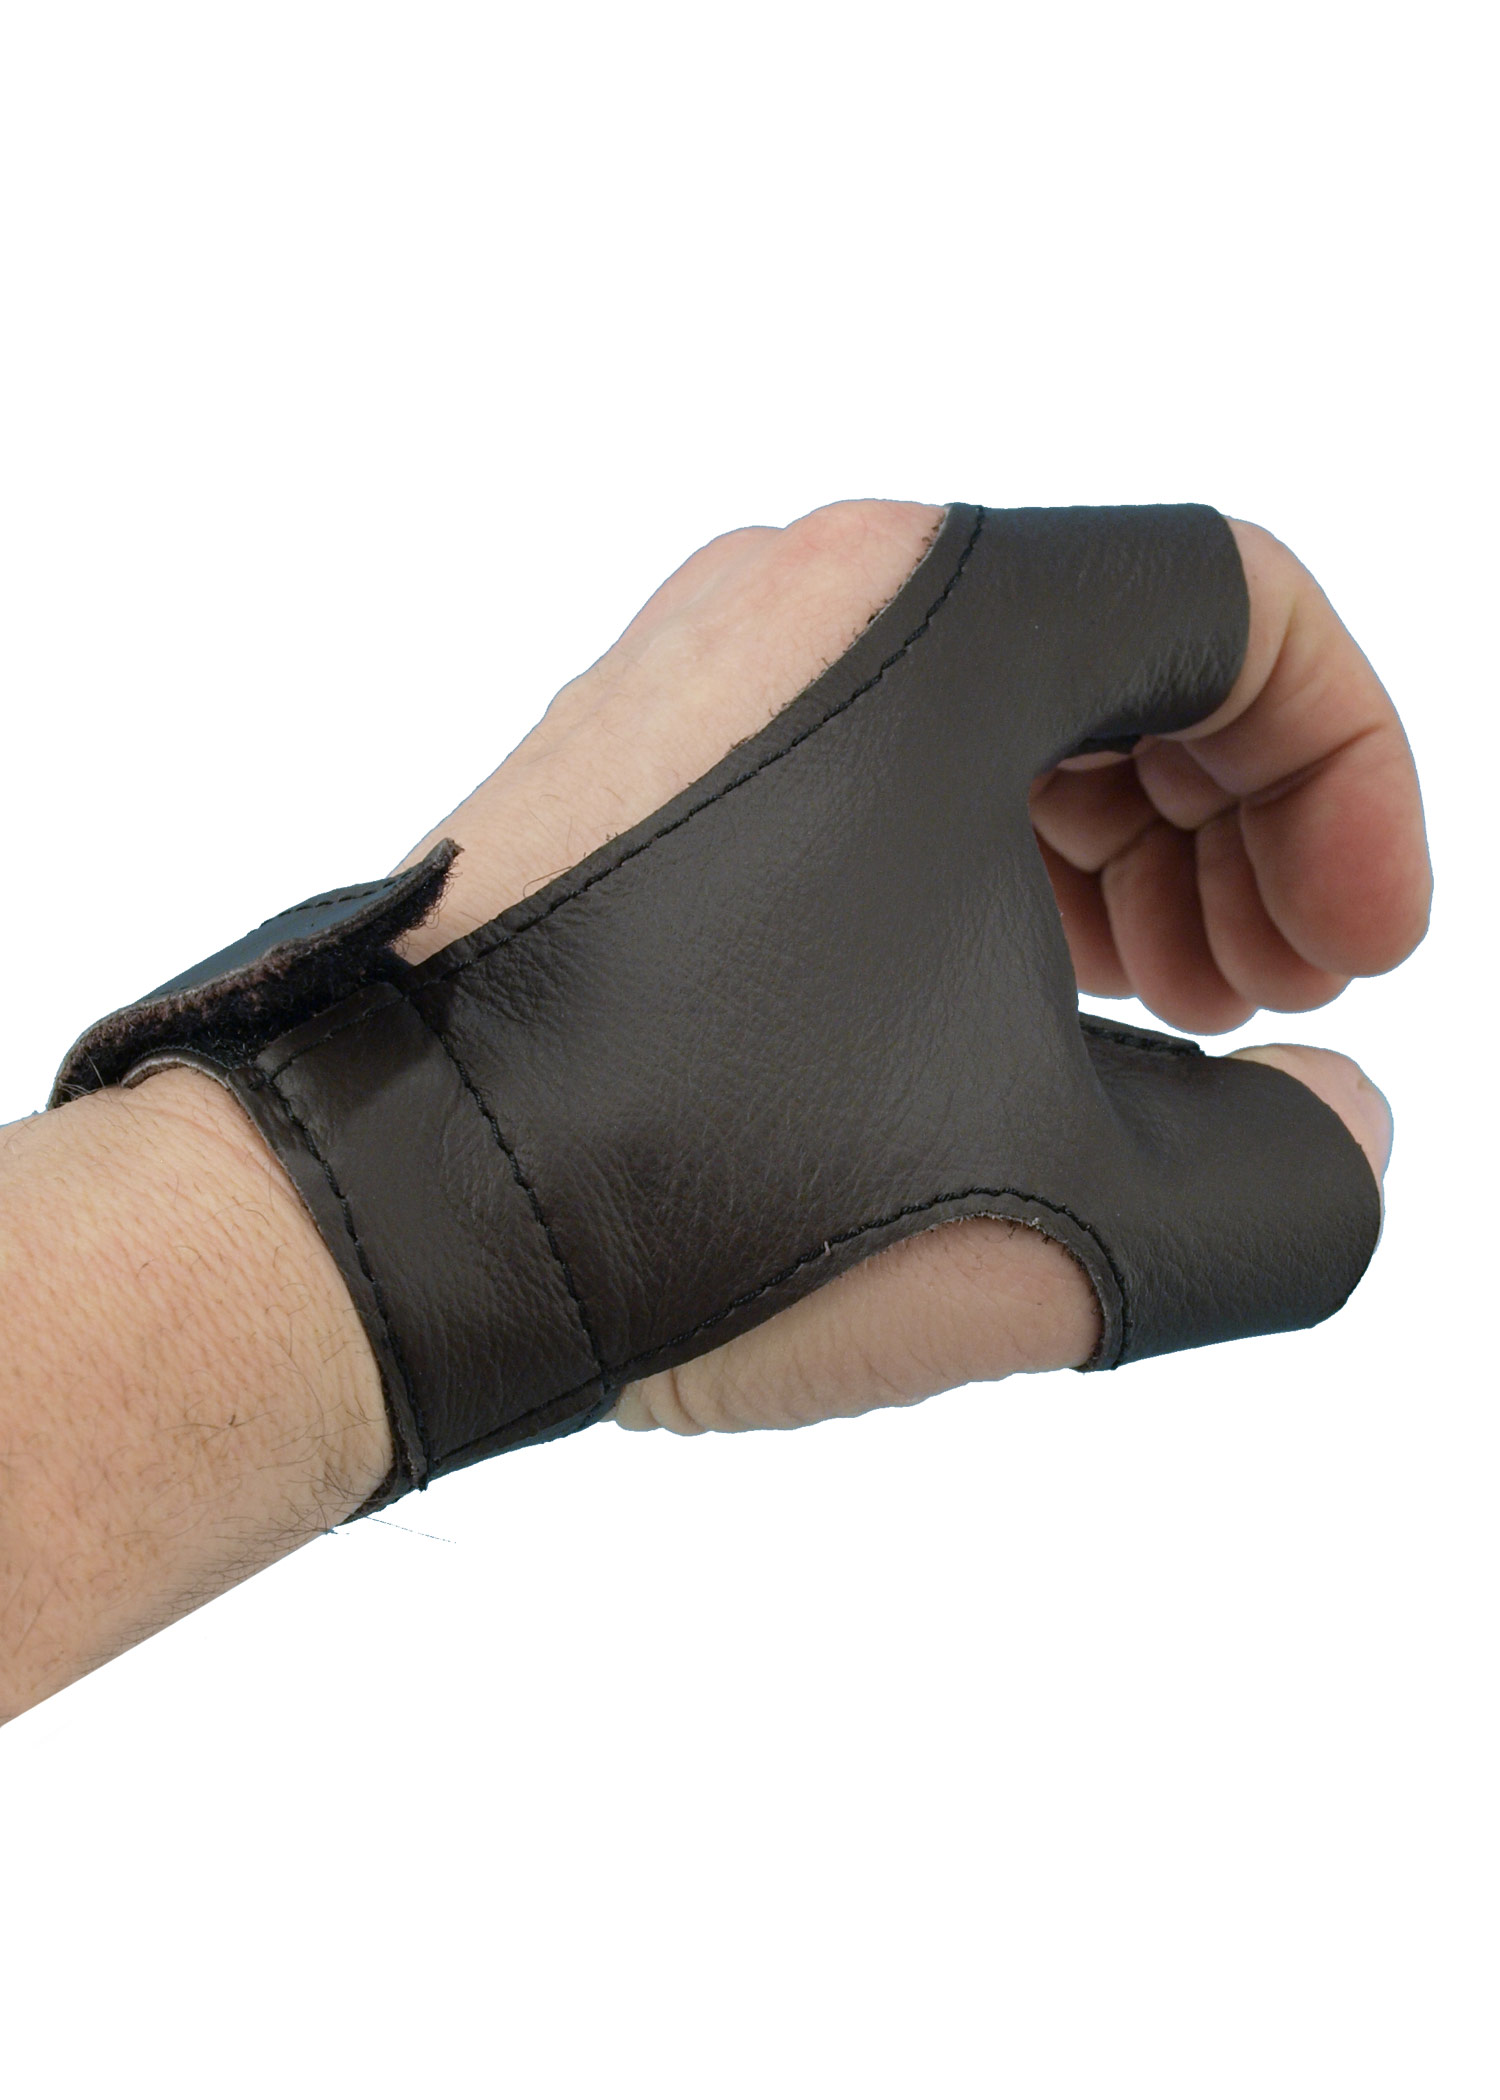 Bogenhandschuh aus Leder für Rechtshänder, braun, Größe XL